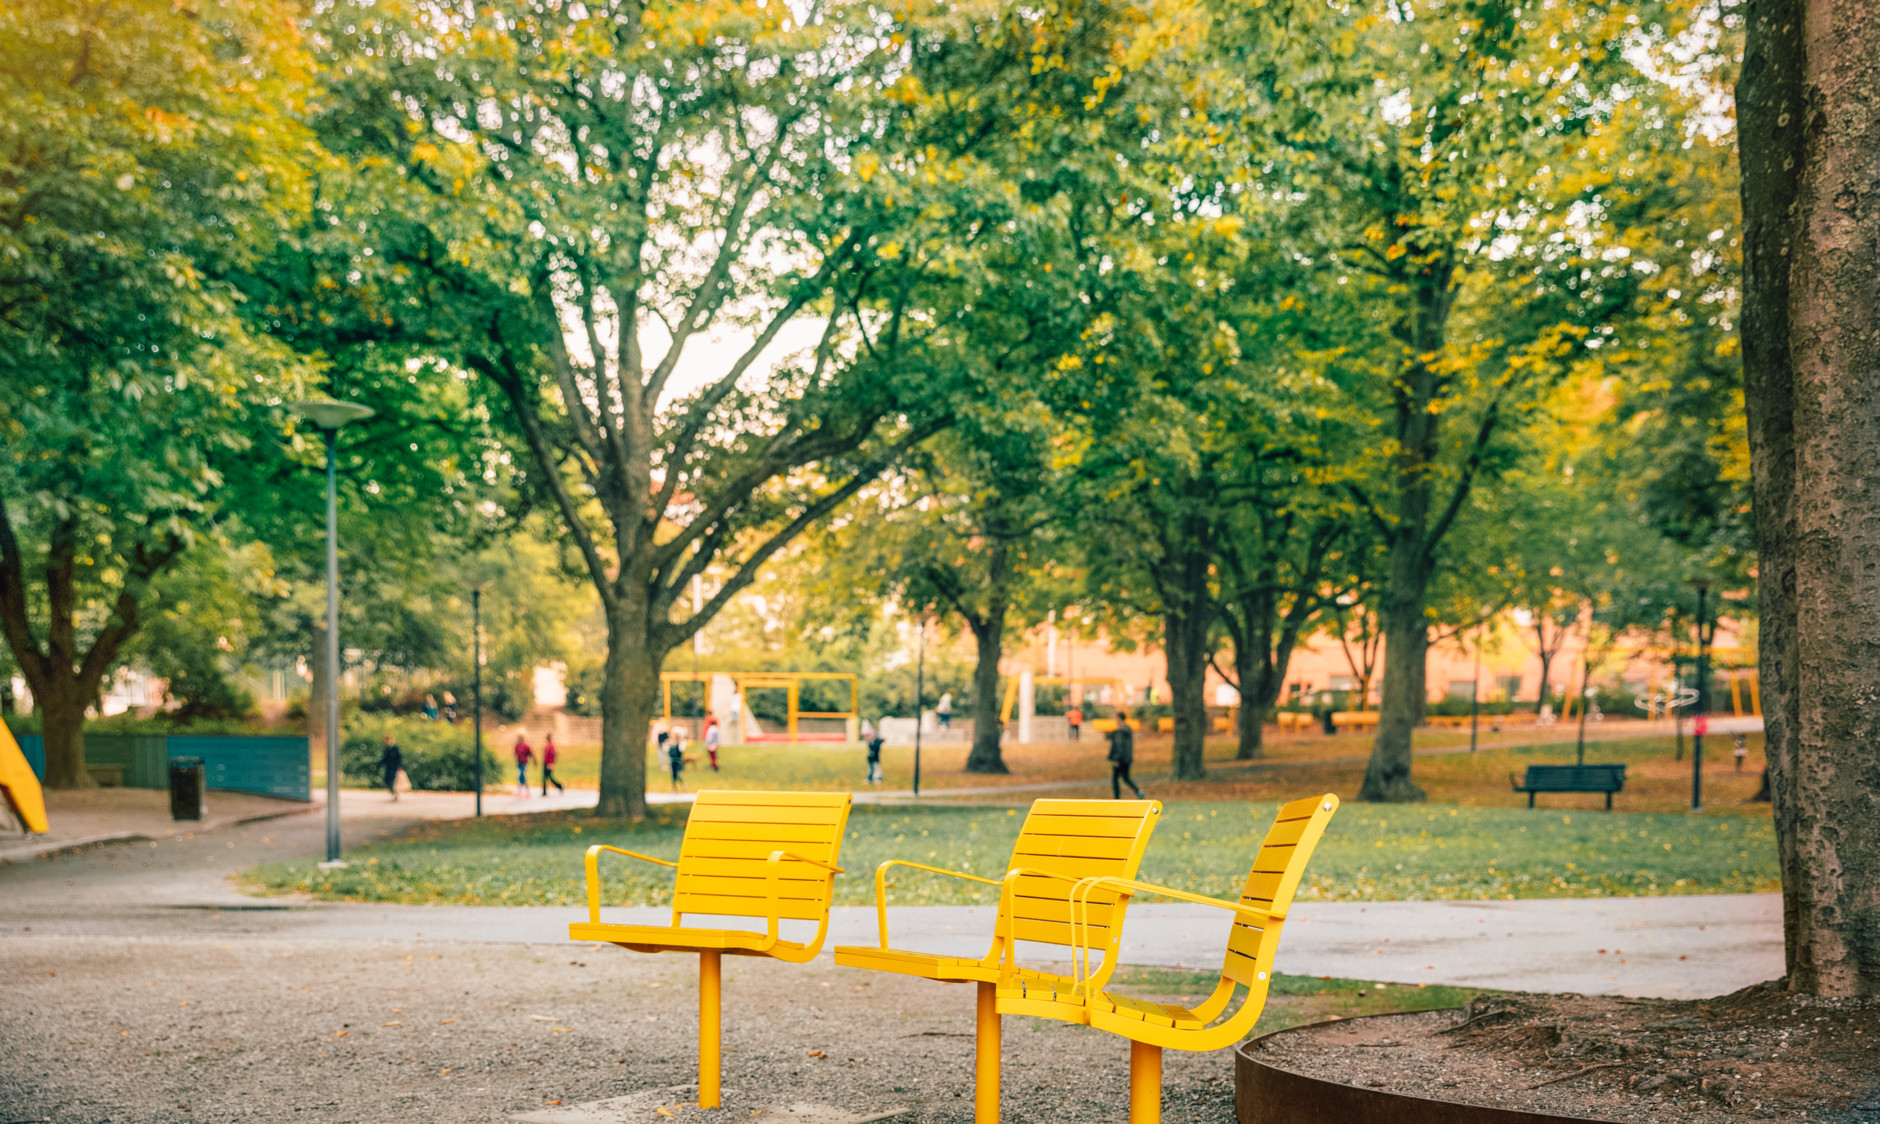 Trevliga sittplatser i Tuvanparken, med inspiration från parklivet i Paris.